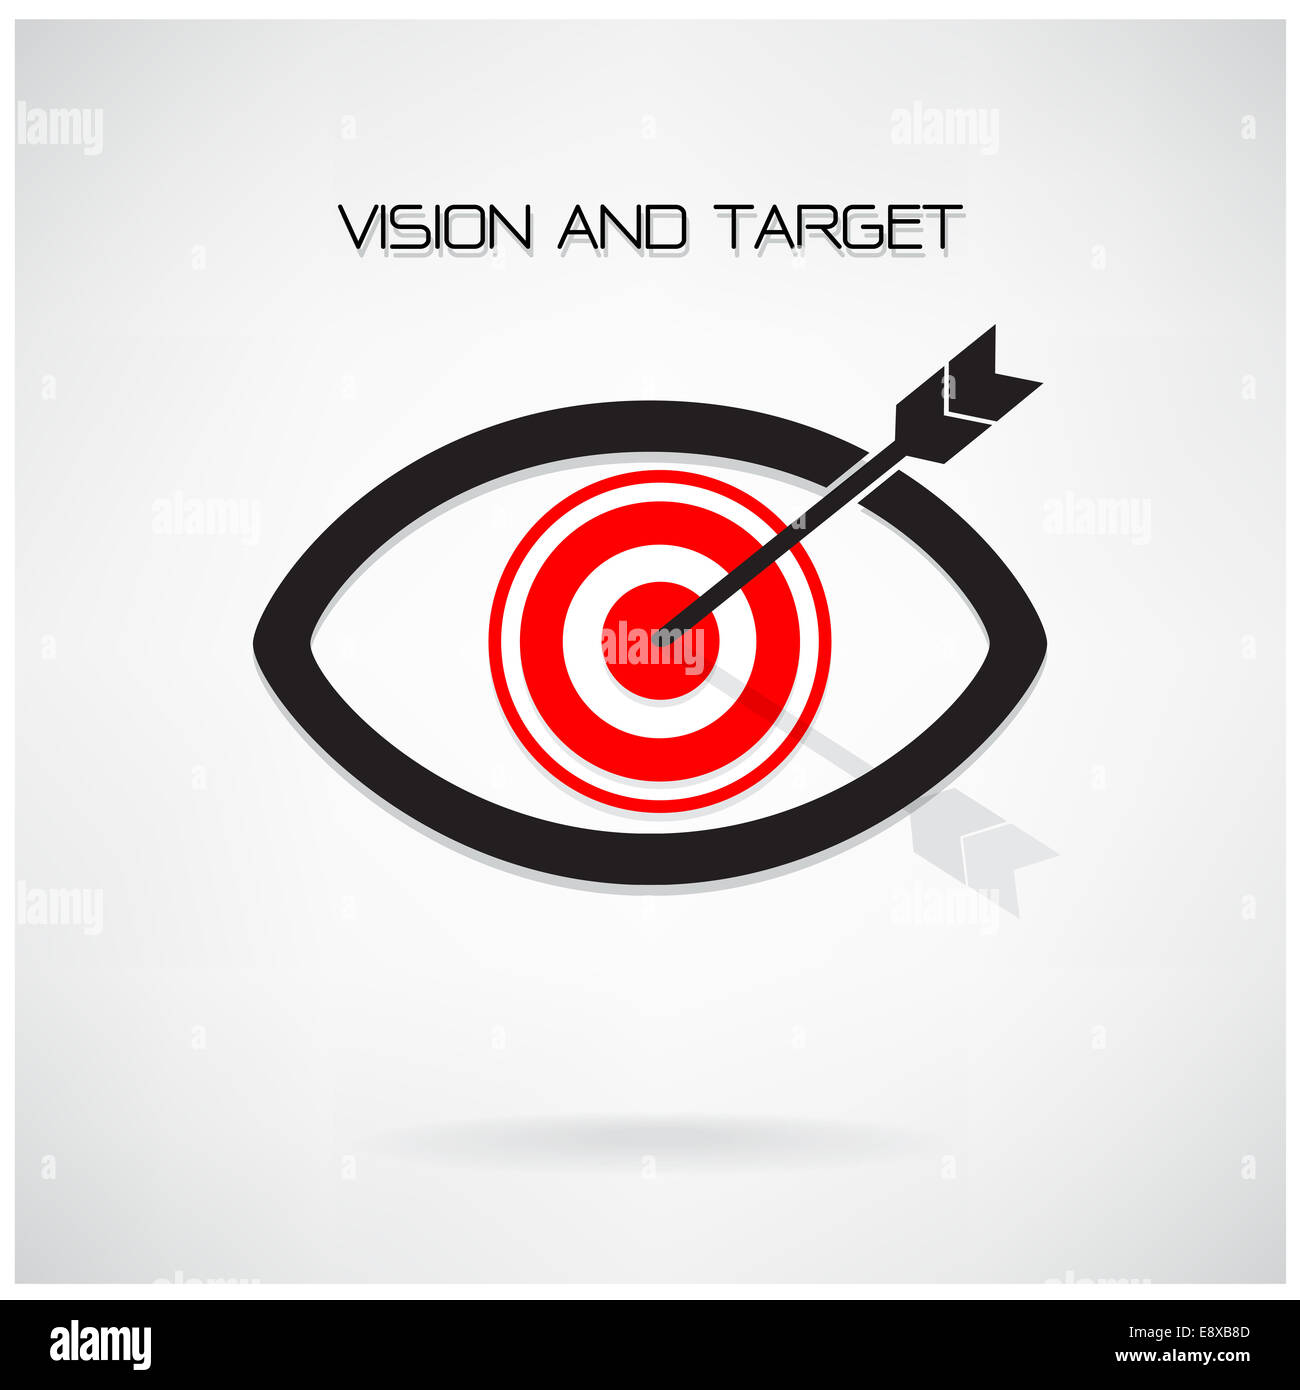 Visione e obiettivo concetto ,simbolo dell'occhio,business idea ,abstract background. Foto Stock